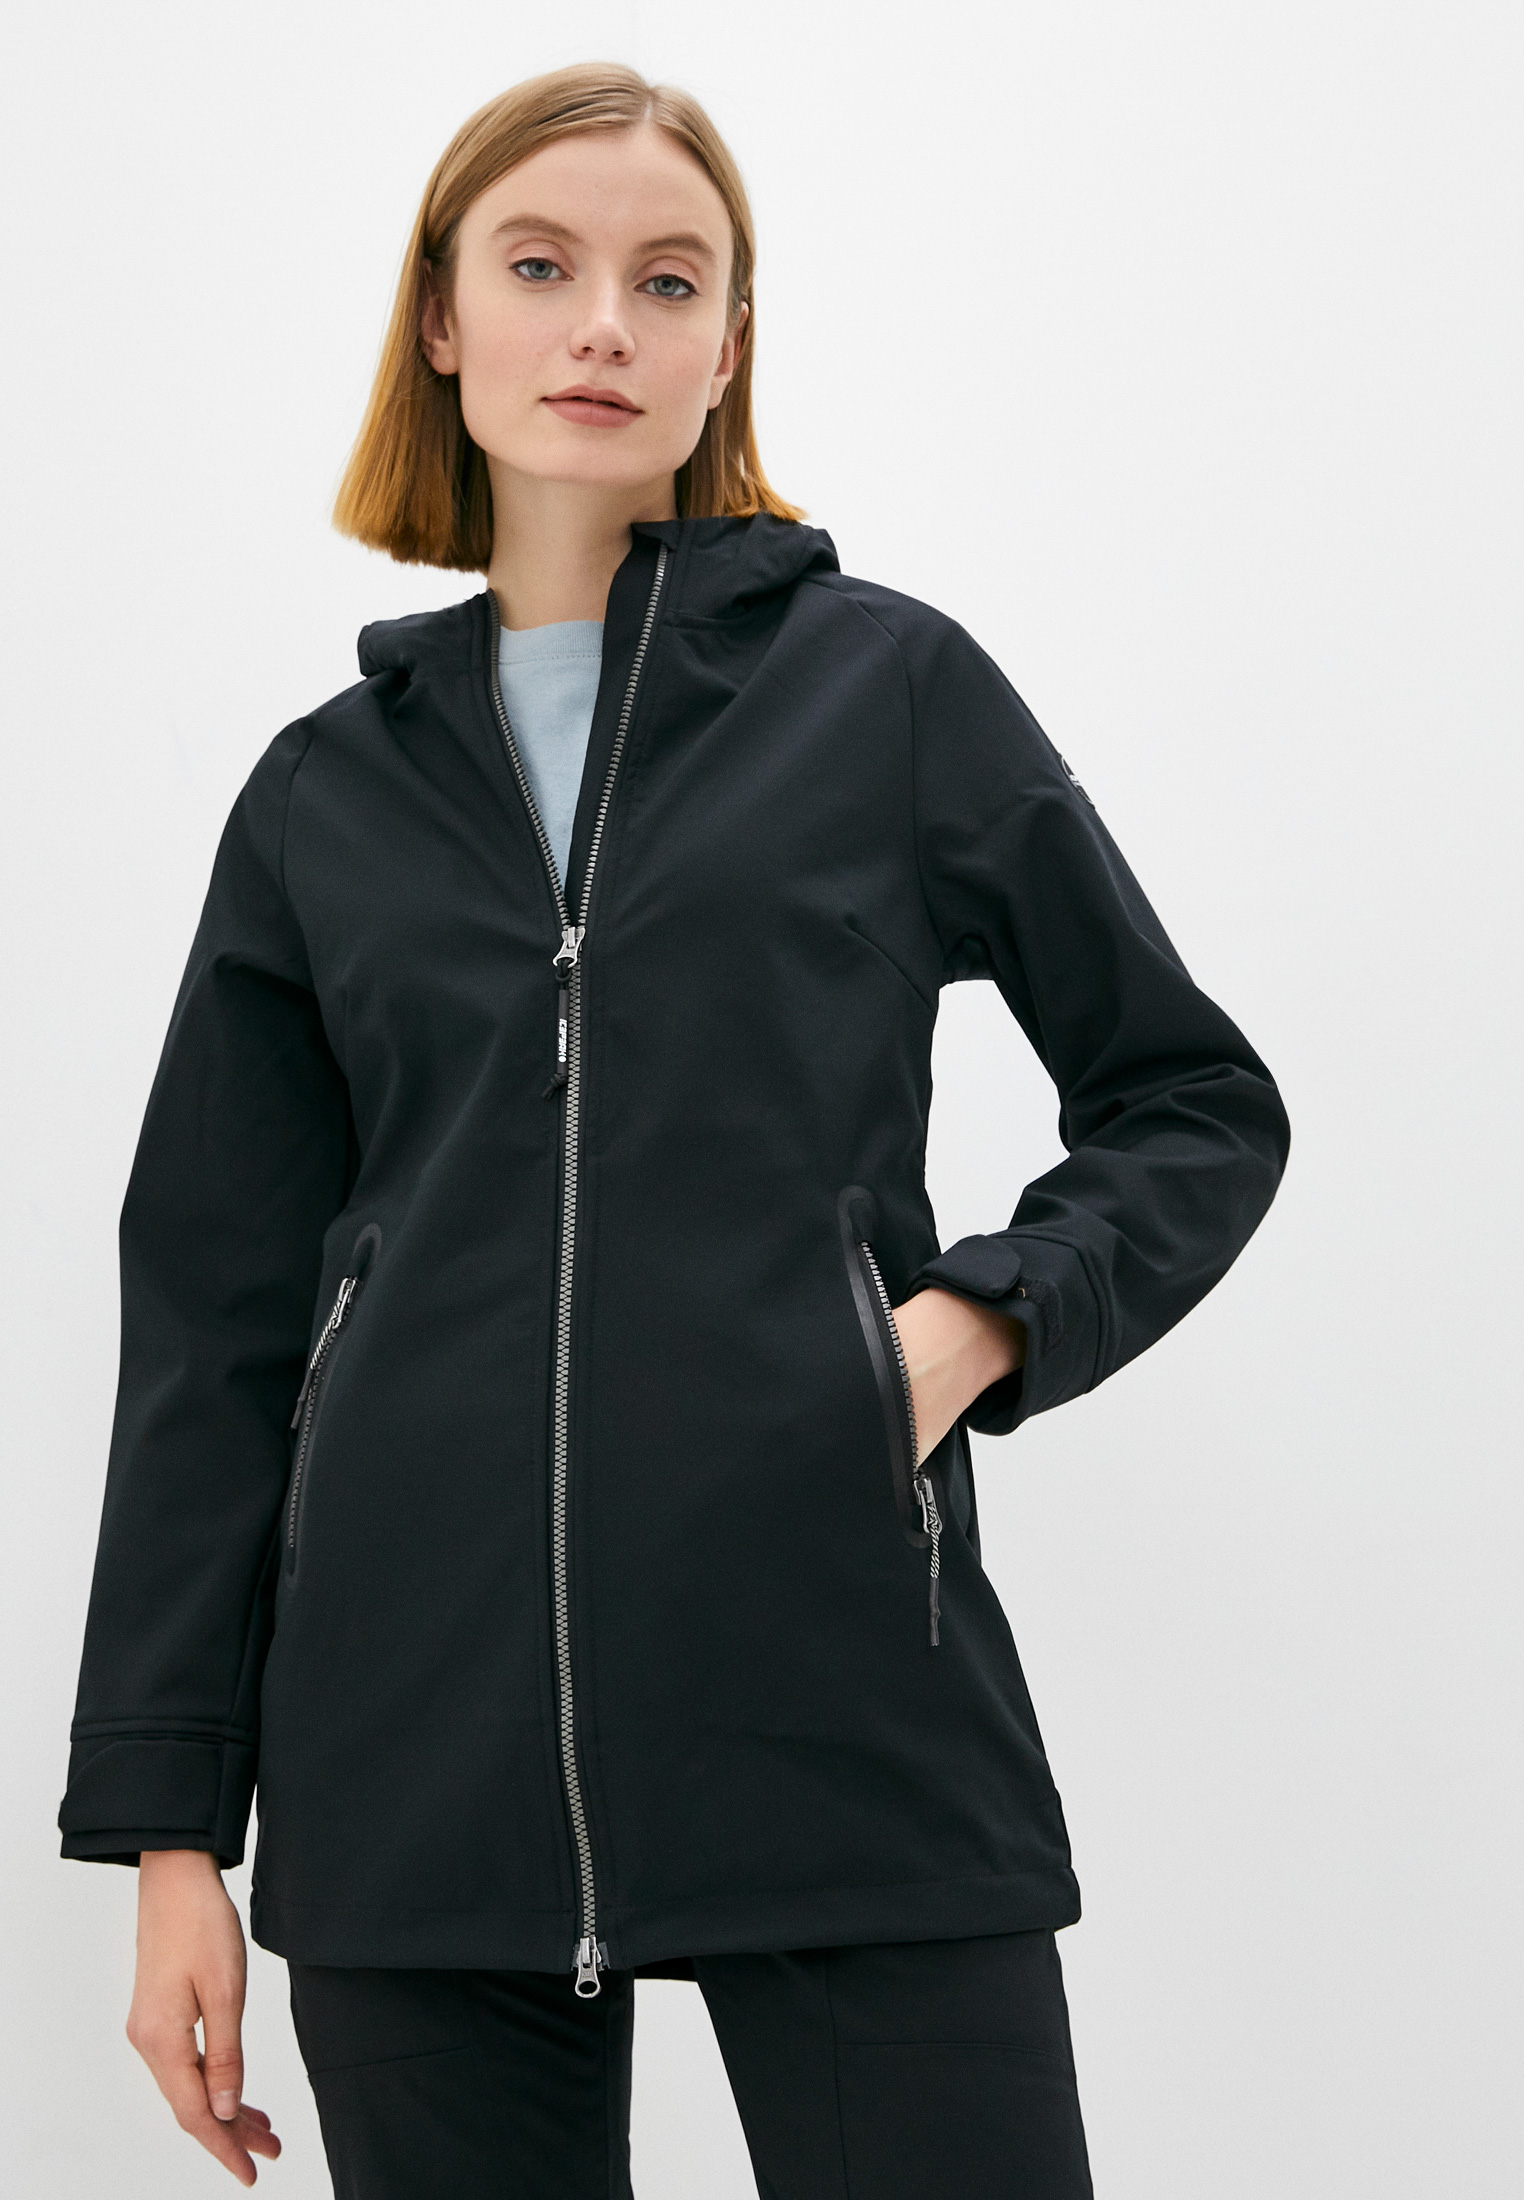 Куртка Icepeak EP ANAHUAC, цвет: черный, RTLAAS043201 — купить в  интернет-магазине Lamoda